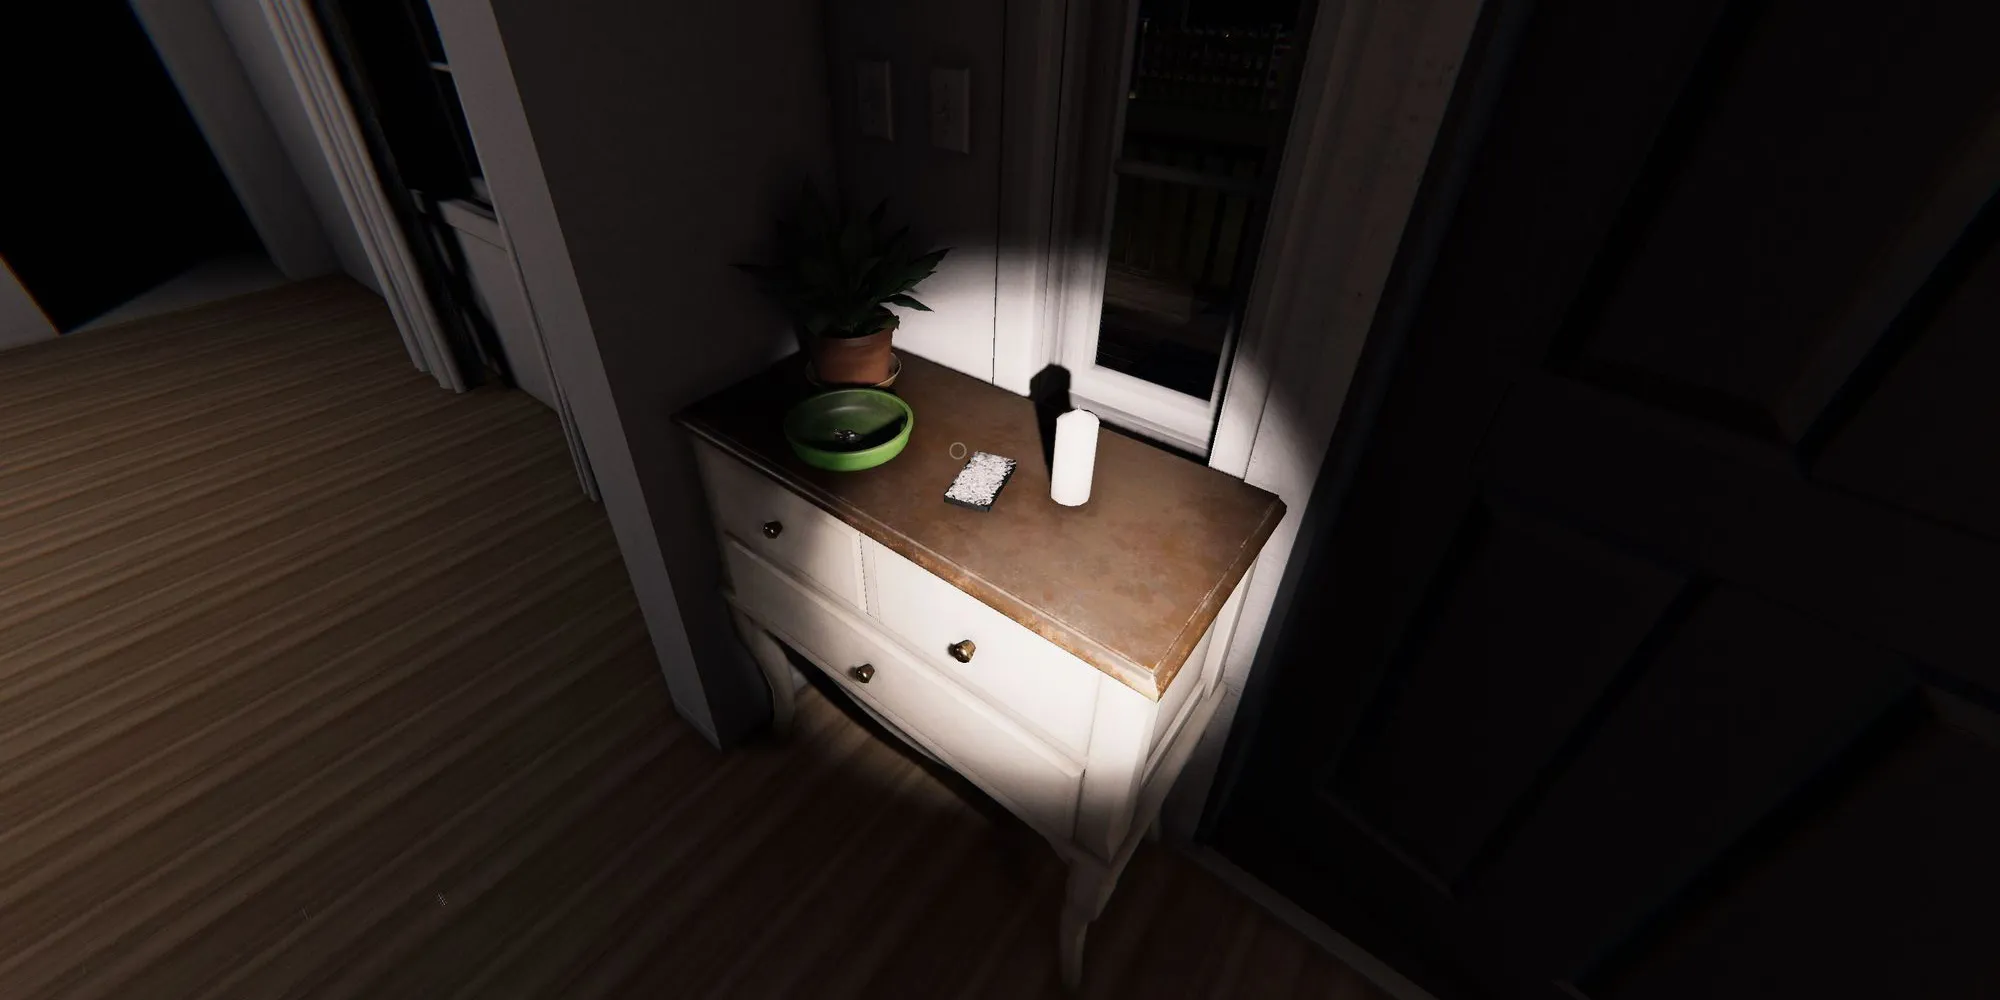 Изображение показывает белый комод с коробкой Таро на верхушке в Ridgeview Court в игре Phasmophobia.